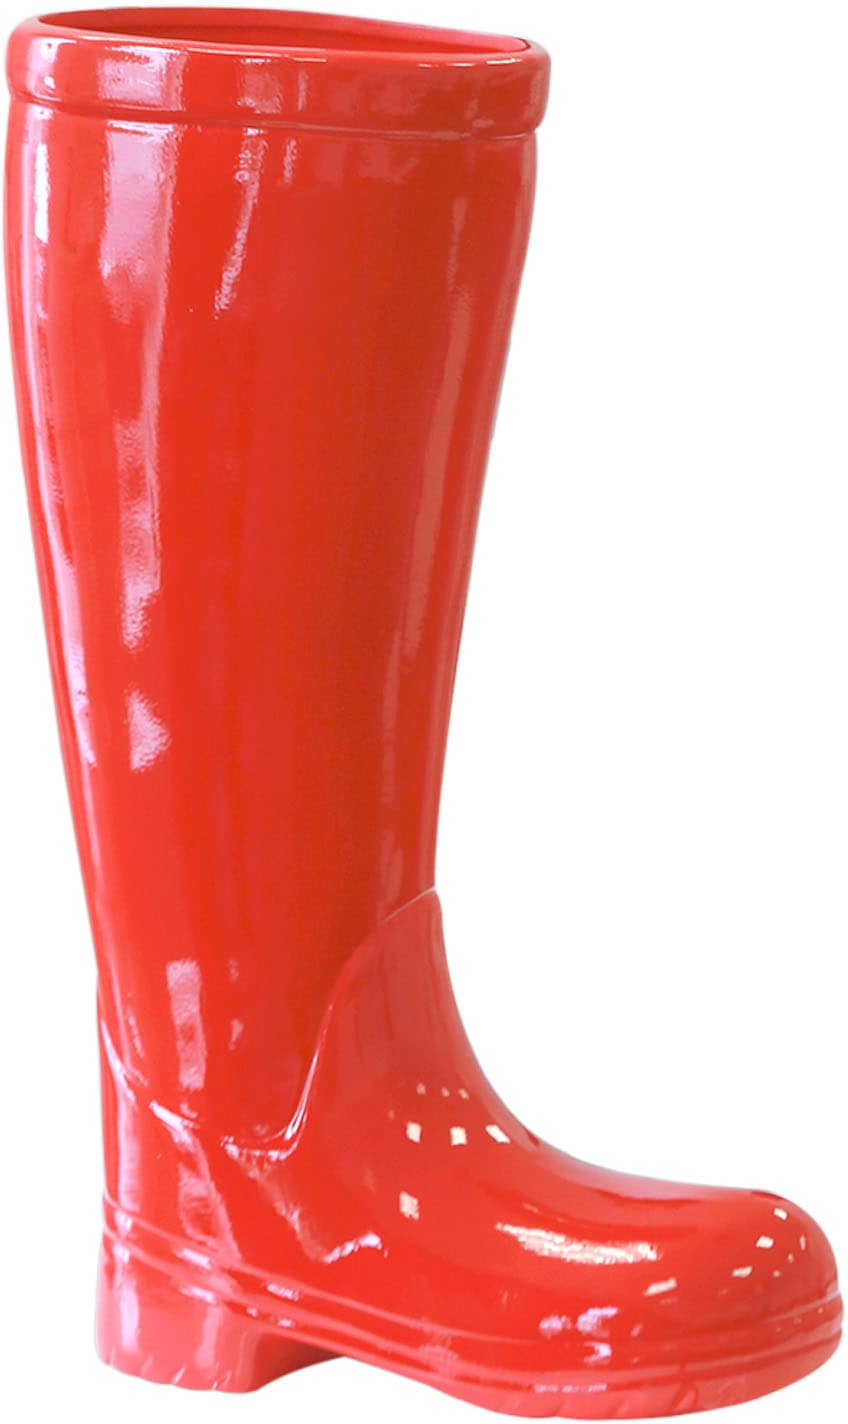 GILDE Schirmständer »Regenschirmständer Stiefel, rot«, (1 St.), für Regenschirme, Höhe 45 cm, Gummistiefel-Form, aus Keramik